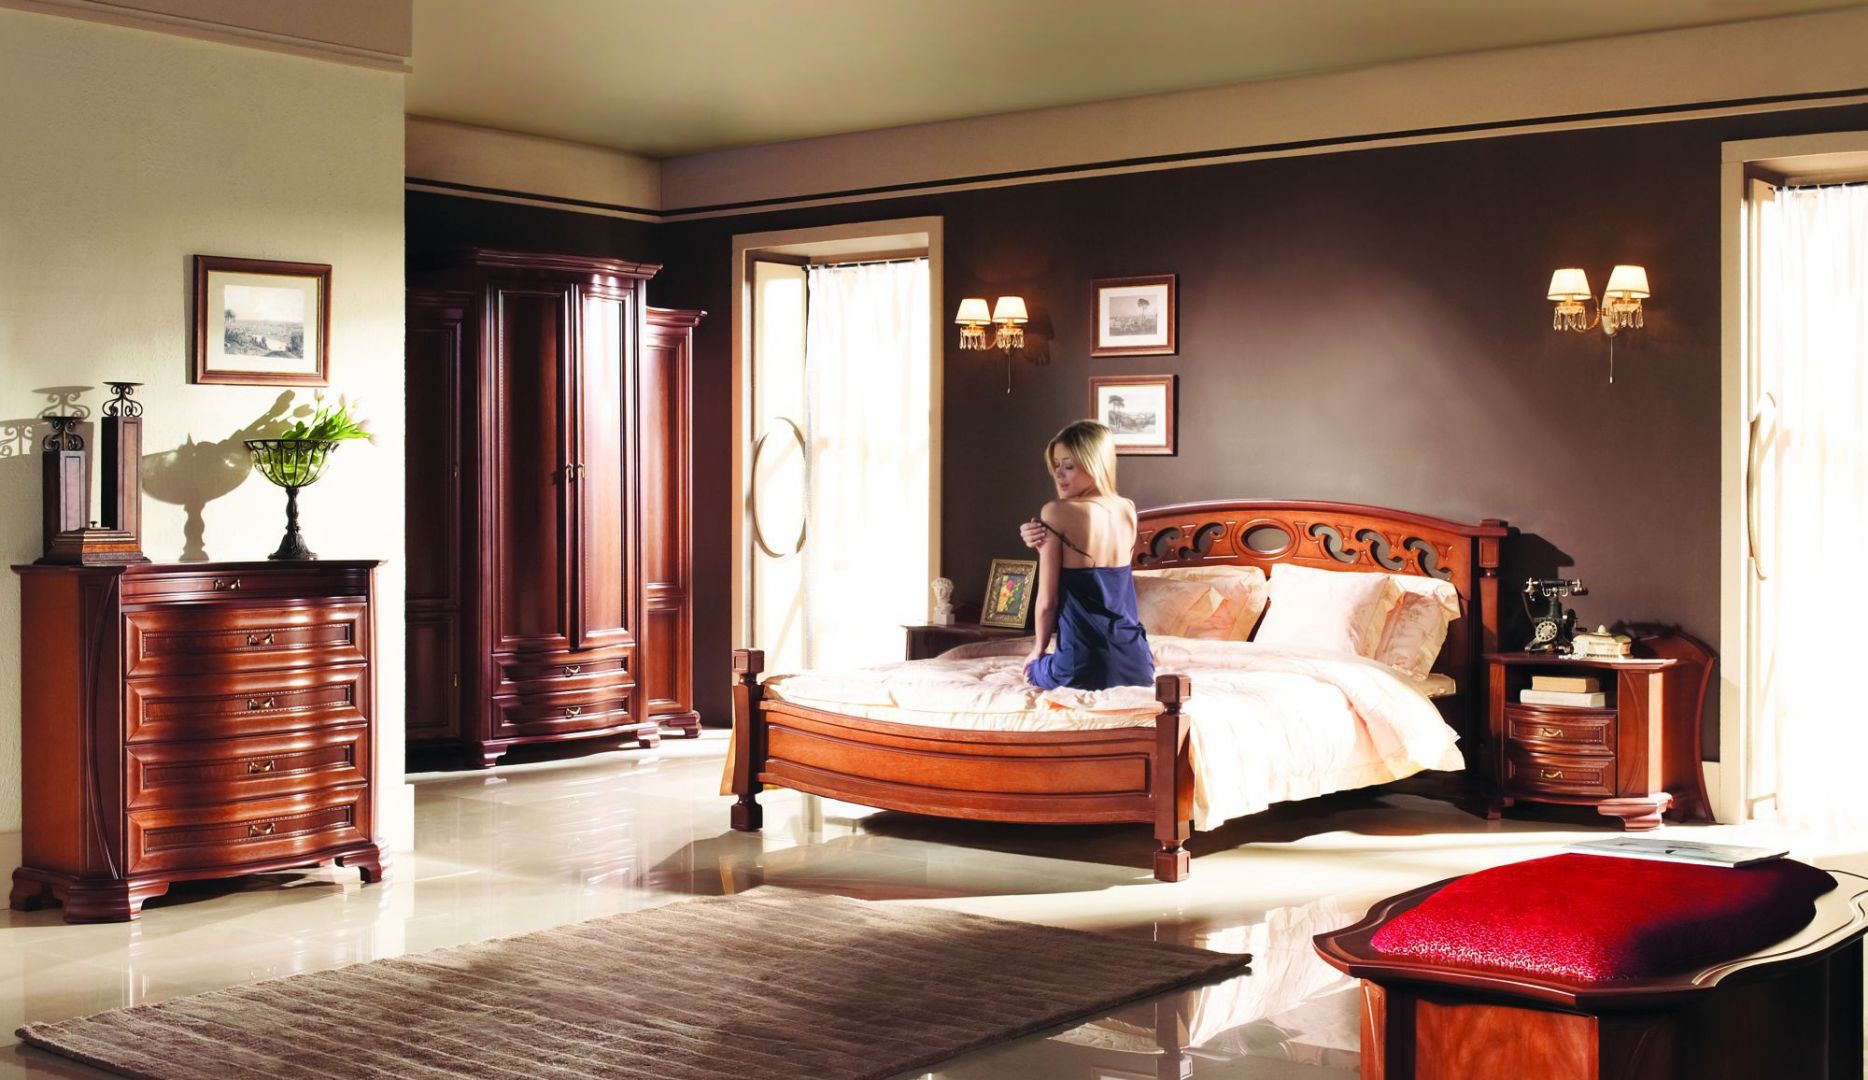 Kolekcja Szmaragd to bogato zdobione meble do sypialni, które nadadzą jej luksusowego klimatu. Fot. Mebin